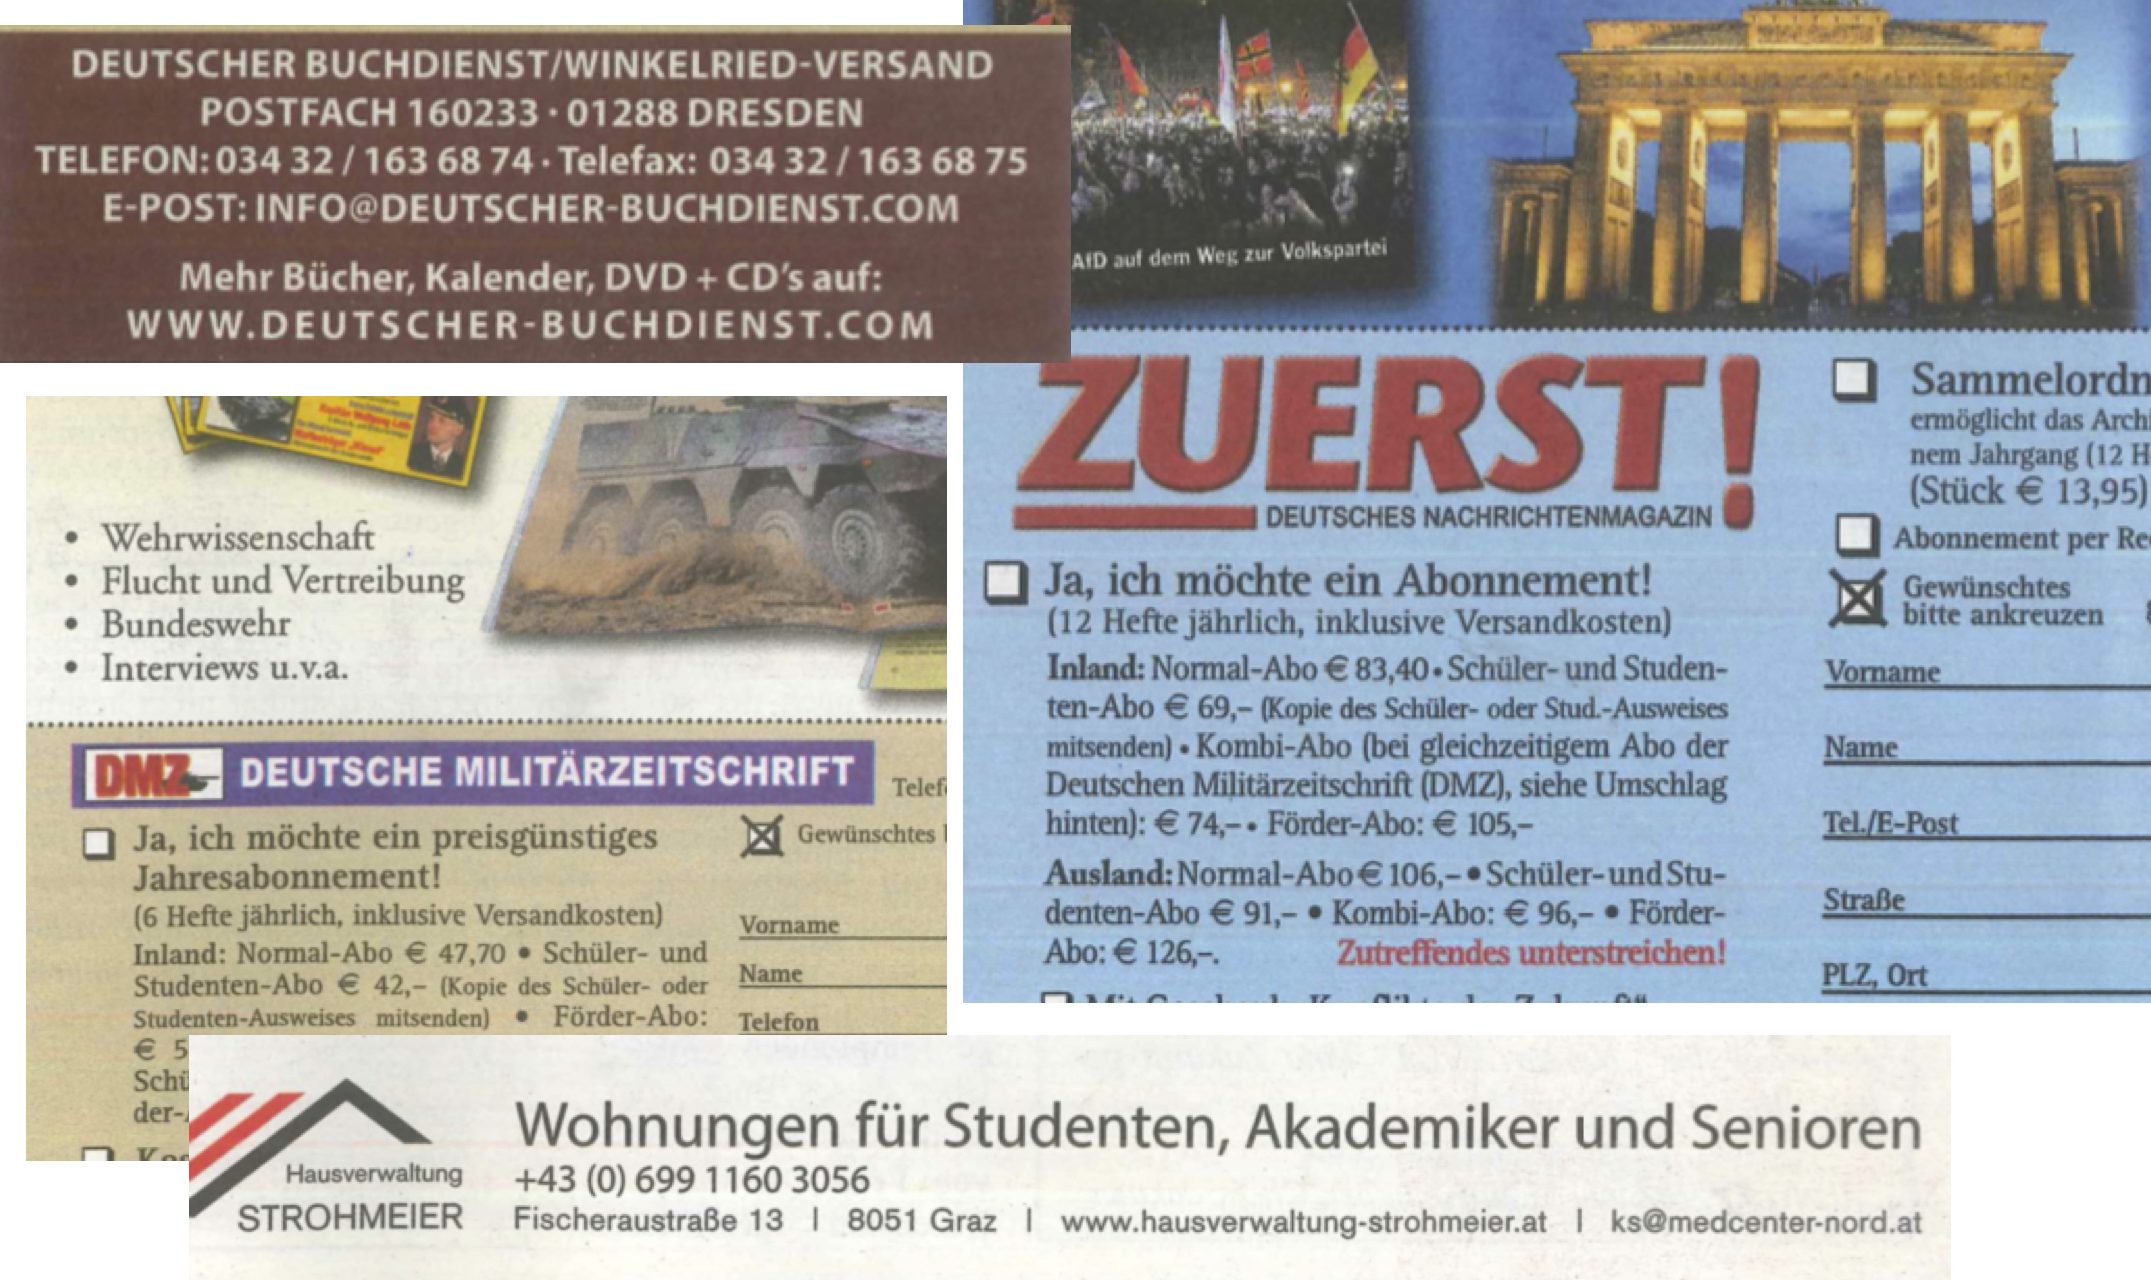 Die Inserate in der "Neuen Aula": "Zuerst", Deutscher Buchdienst, Deutsche Militärzeitschrift, Hausvrwaltung Strohmeier